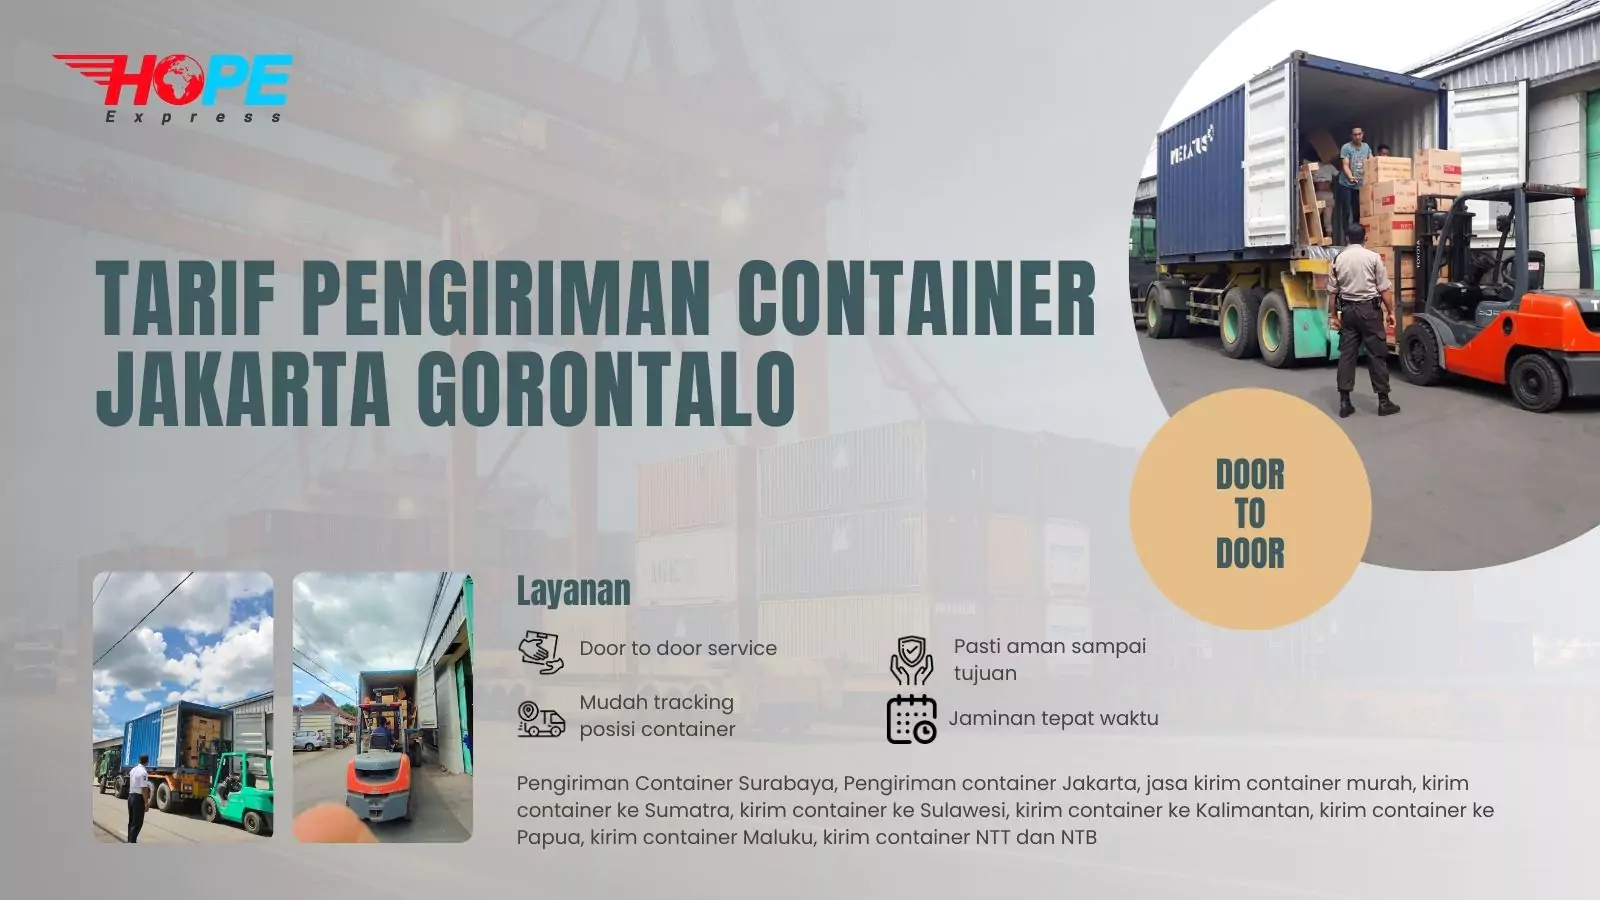 Tarif Pengiriman Container Jakarta Gorontalo